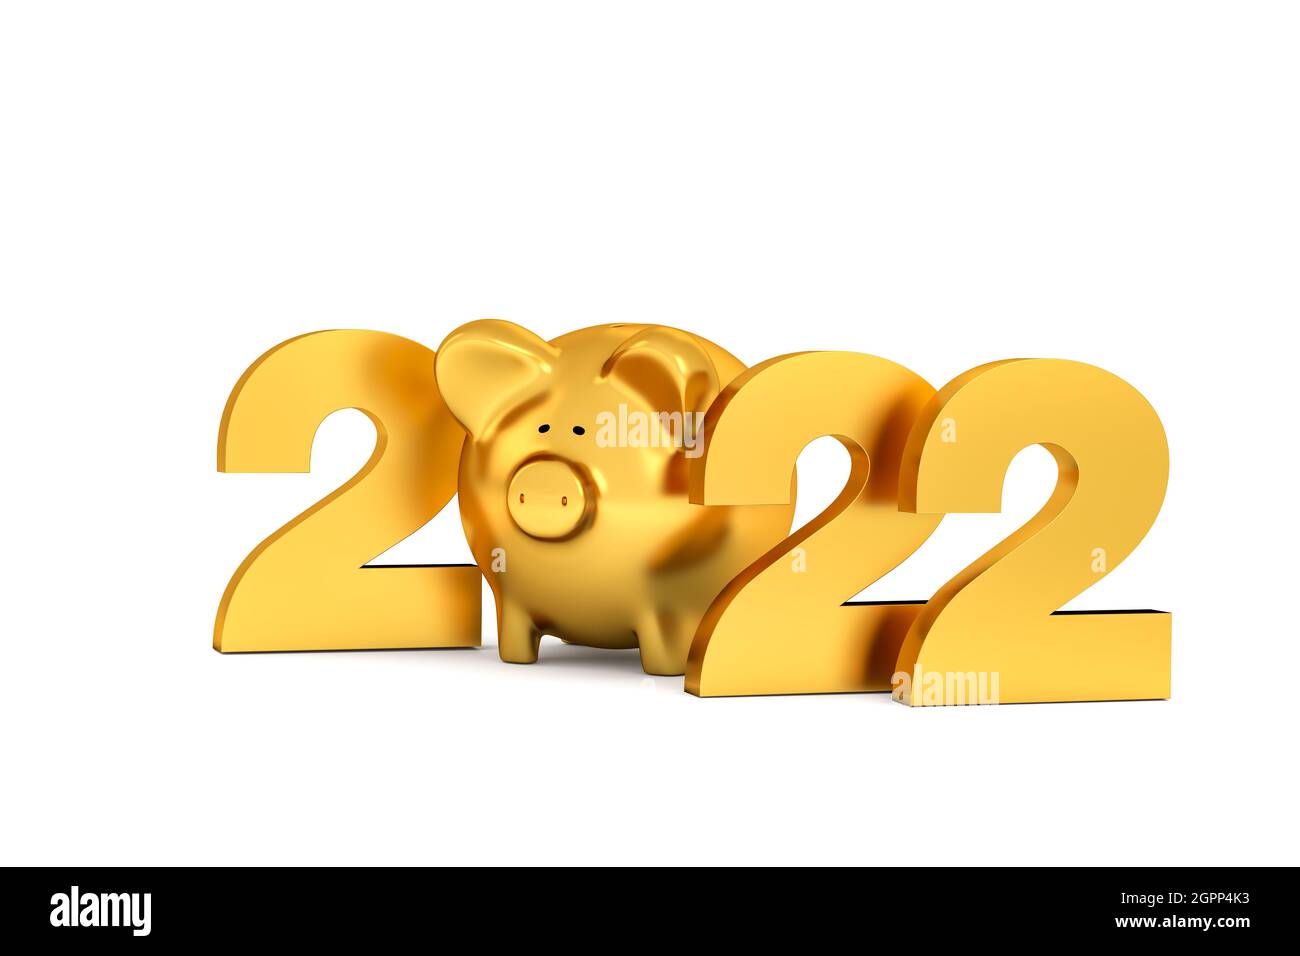 Felice anno nuovo 2022 concetto: Lettere d'oro 2*22 e una piggybank inintermezzo. Isolato su bianco. Foto Stock